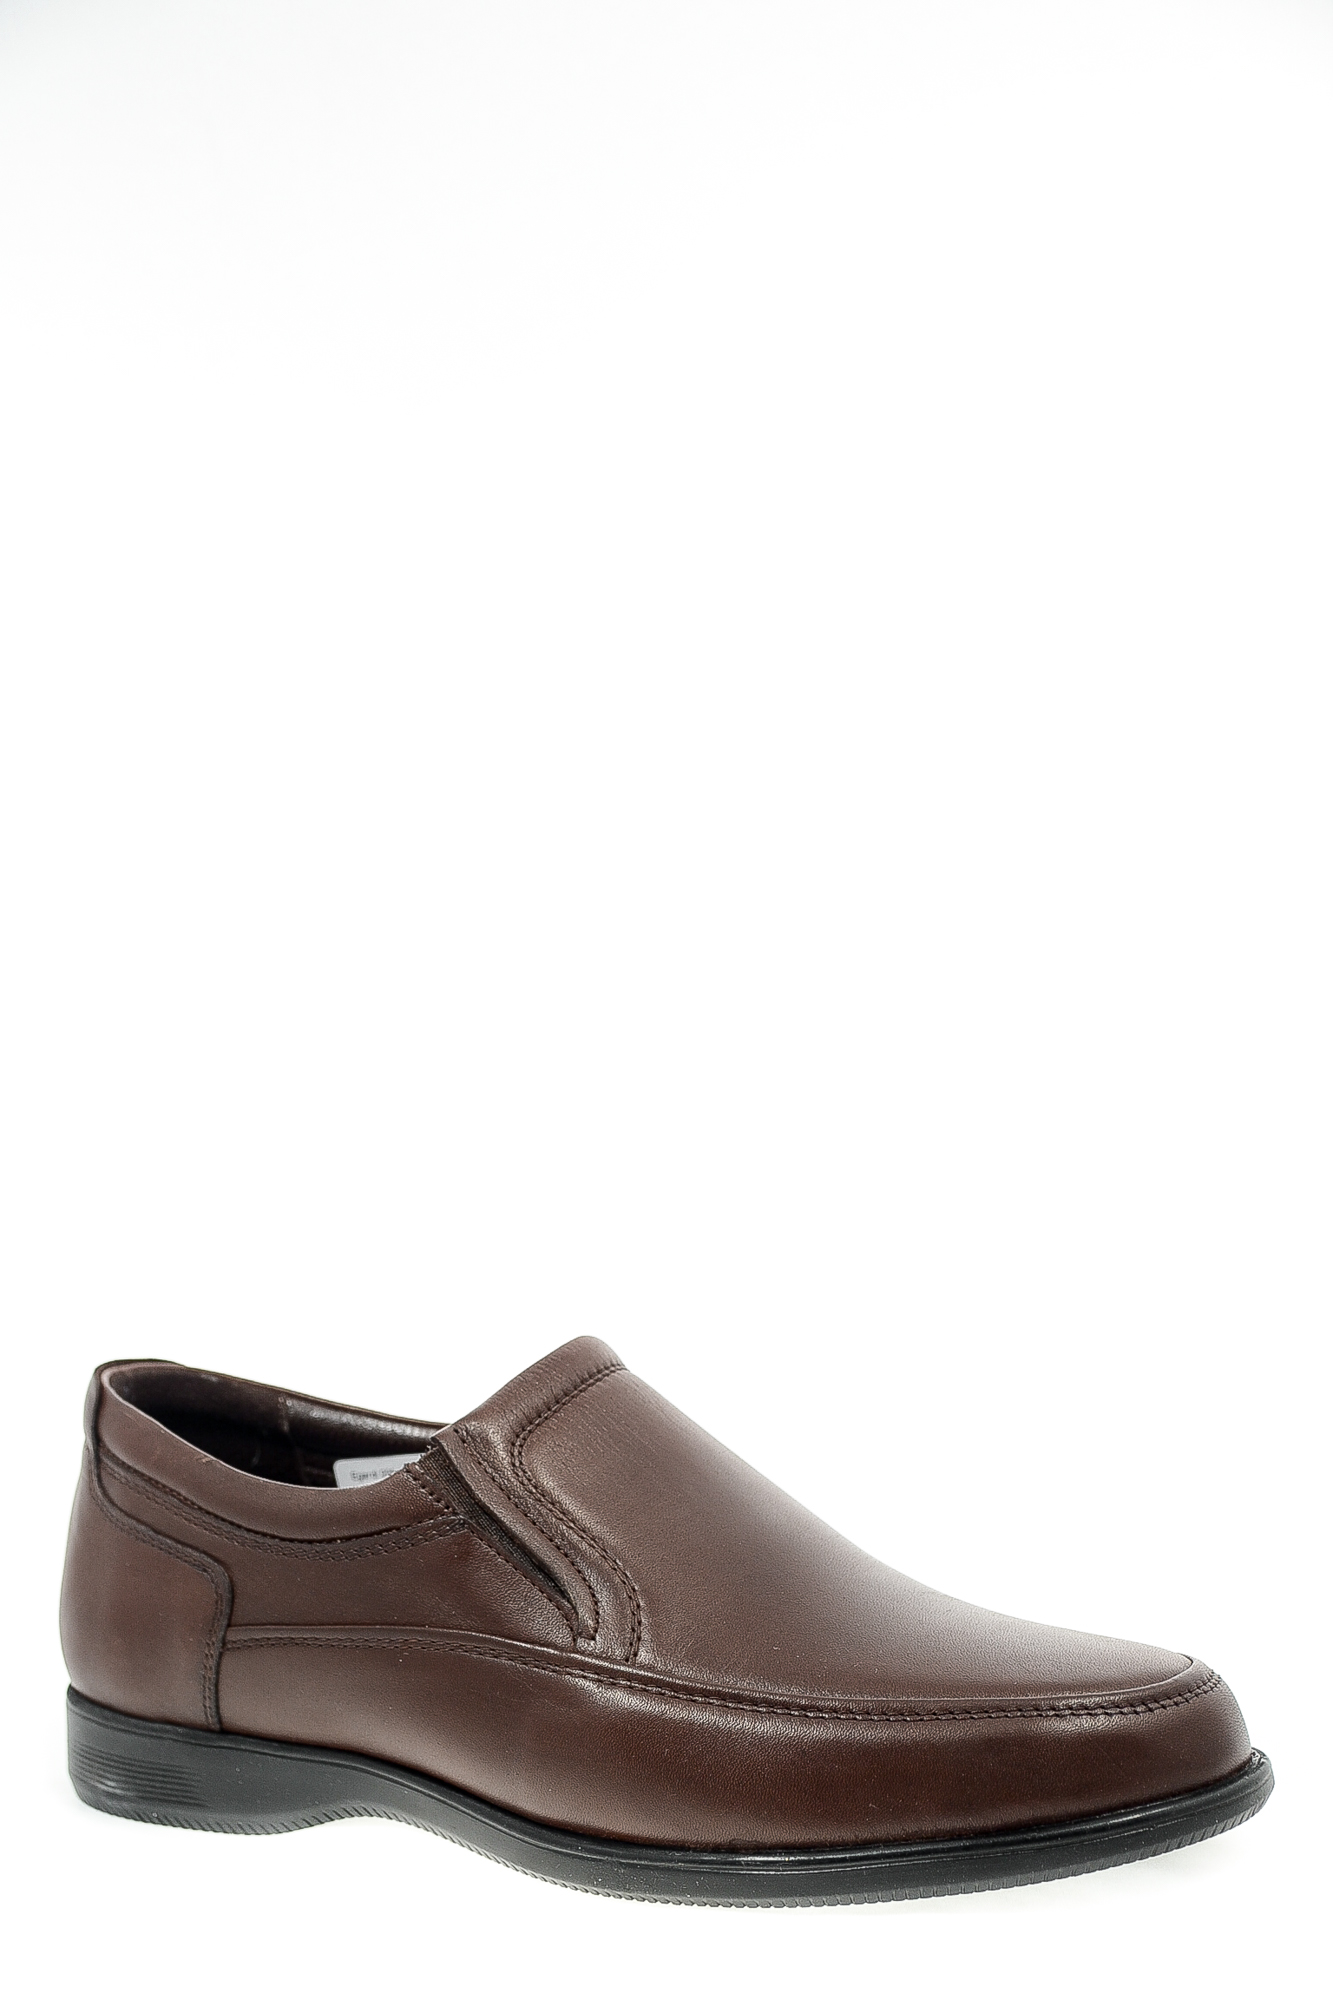 Туфли натуральная кожа Egardi Egardi 005-15441 кор цвет коричневый.